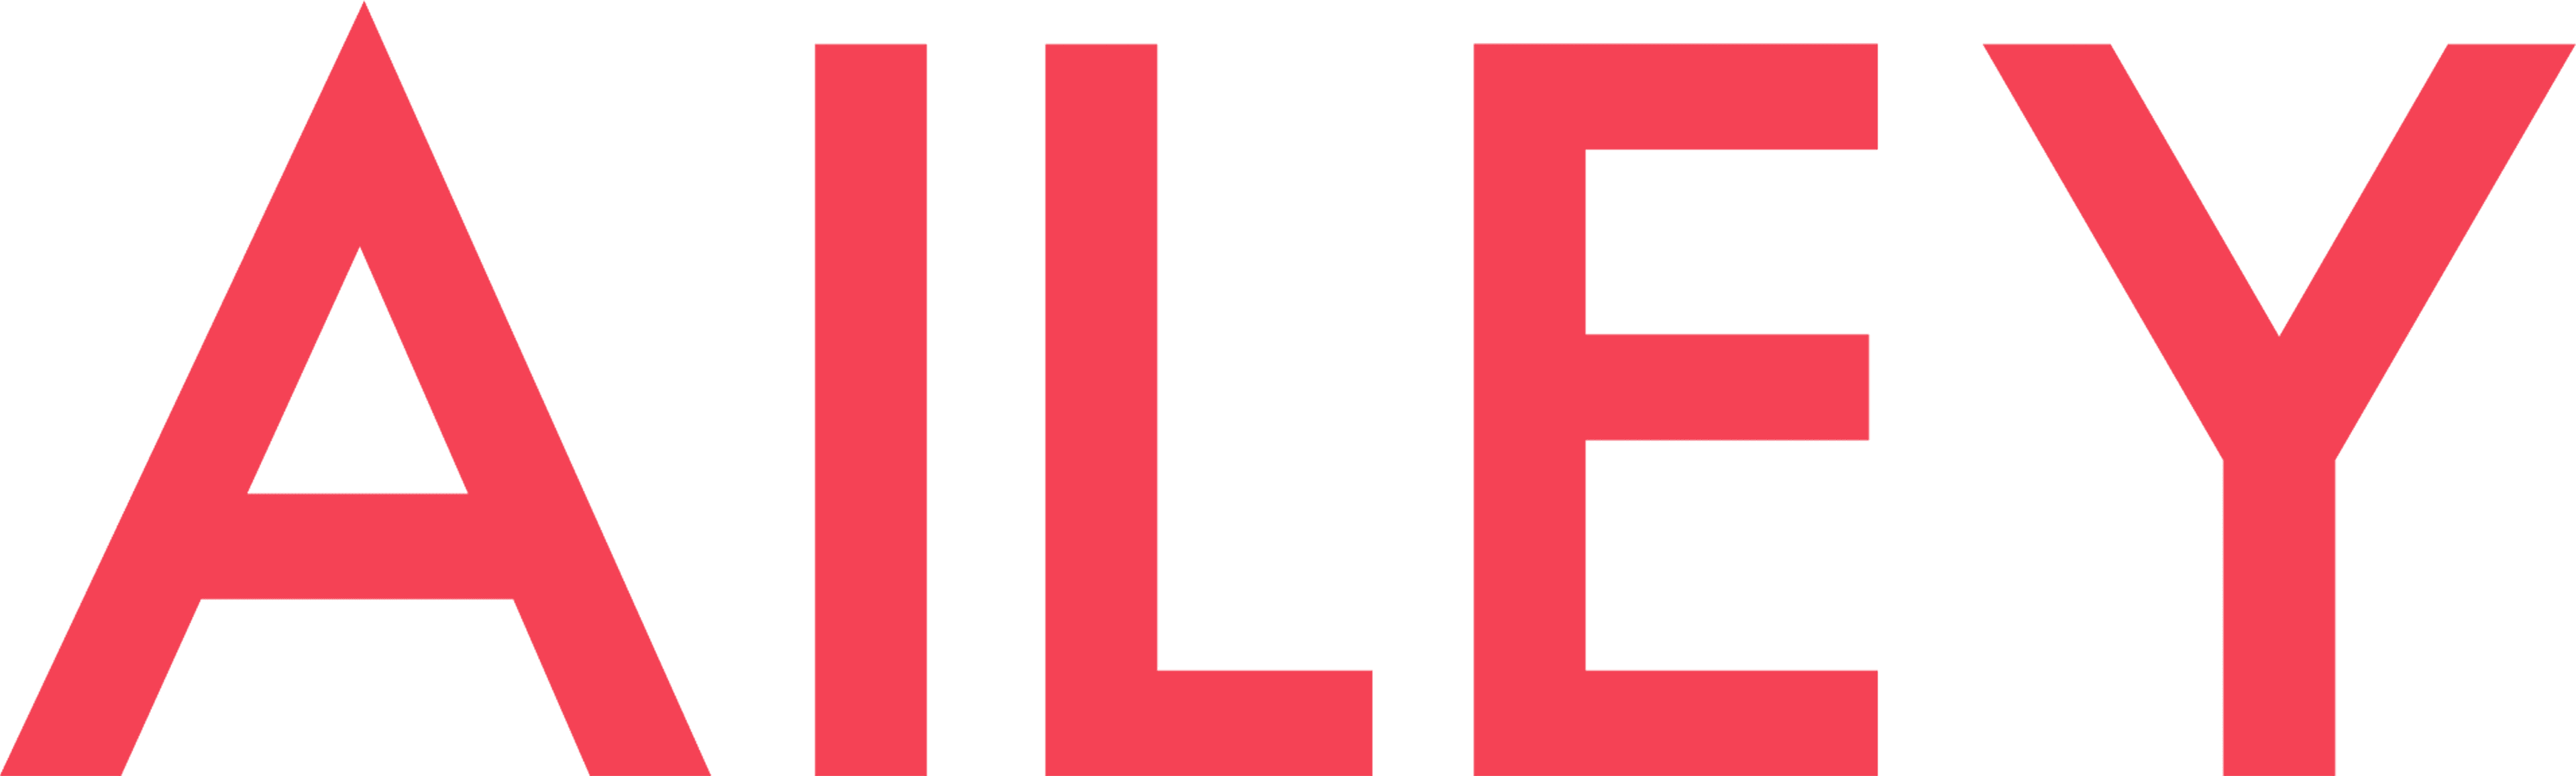 Ailey logo